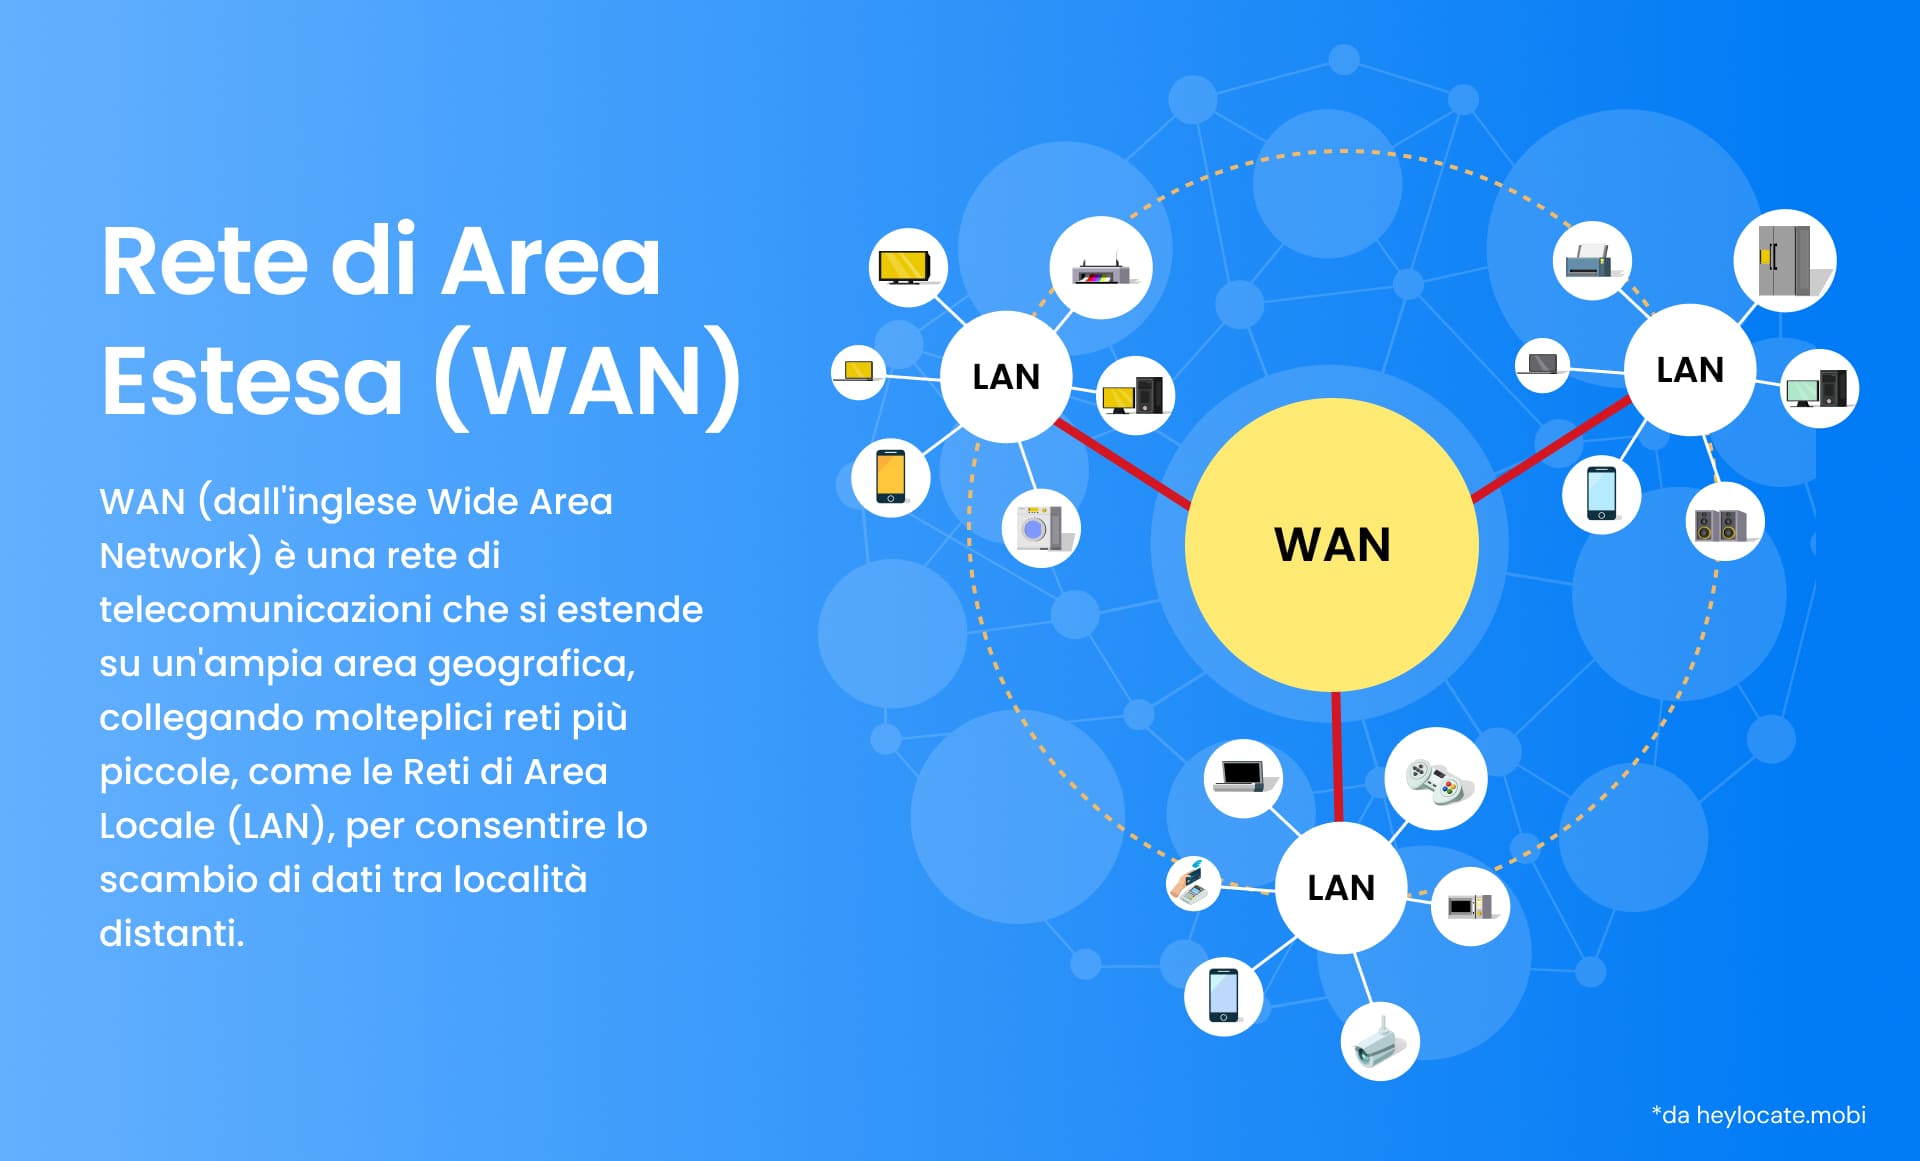 Questa immagine rappresenta una rete WAN (Wide Area Network), evidenziando come essa colleghi diverse reti più piccole, come le reti locali (LAN), su una vasta area geografica per facilitare lo scambio di dati tra località distanti.